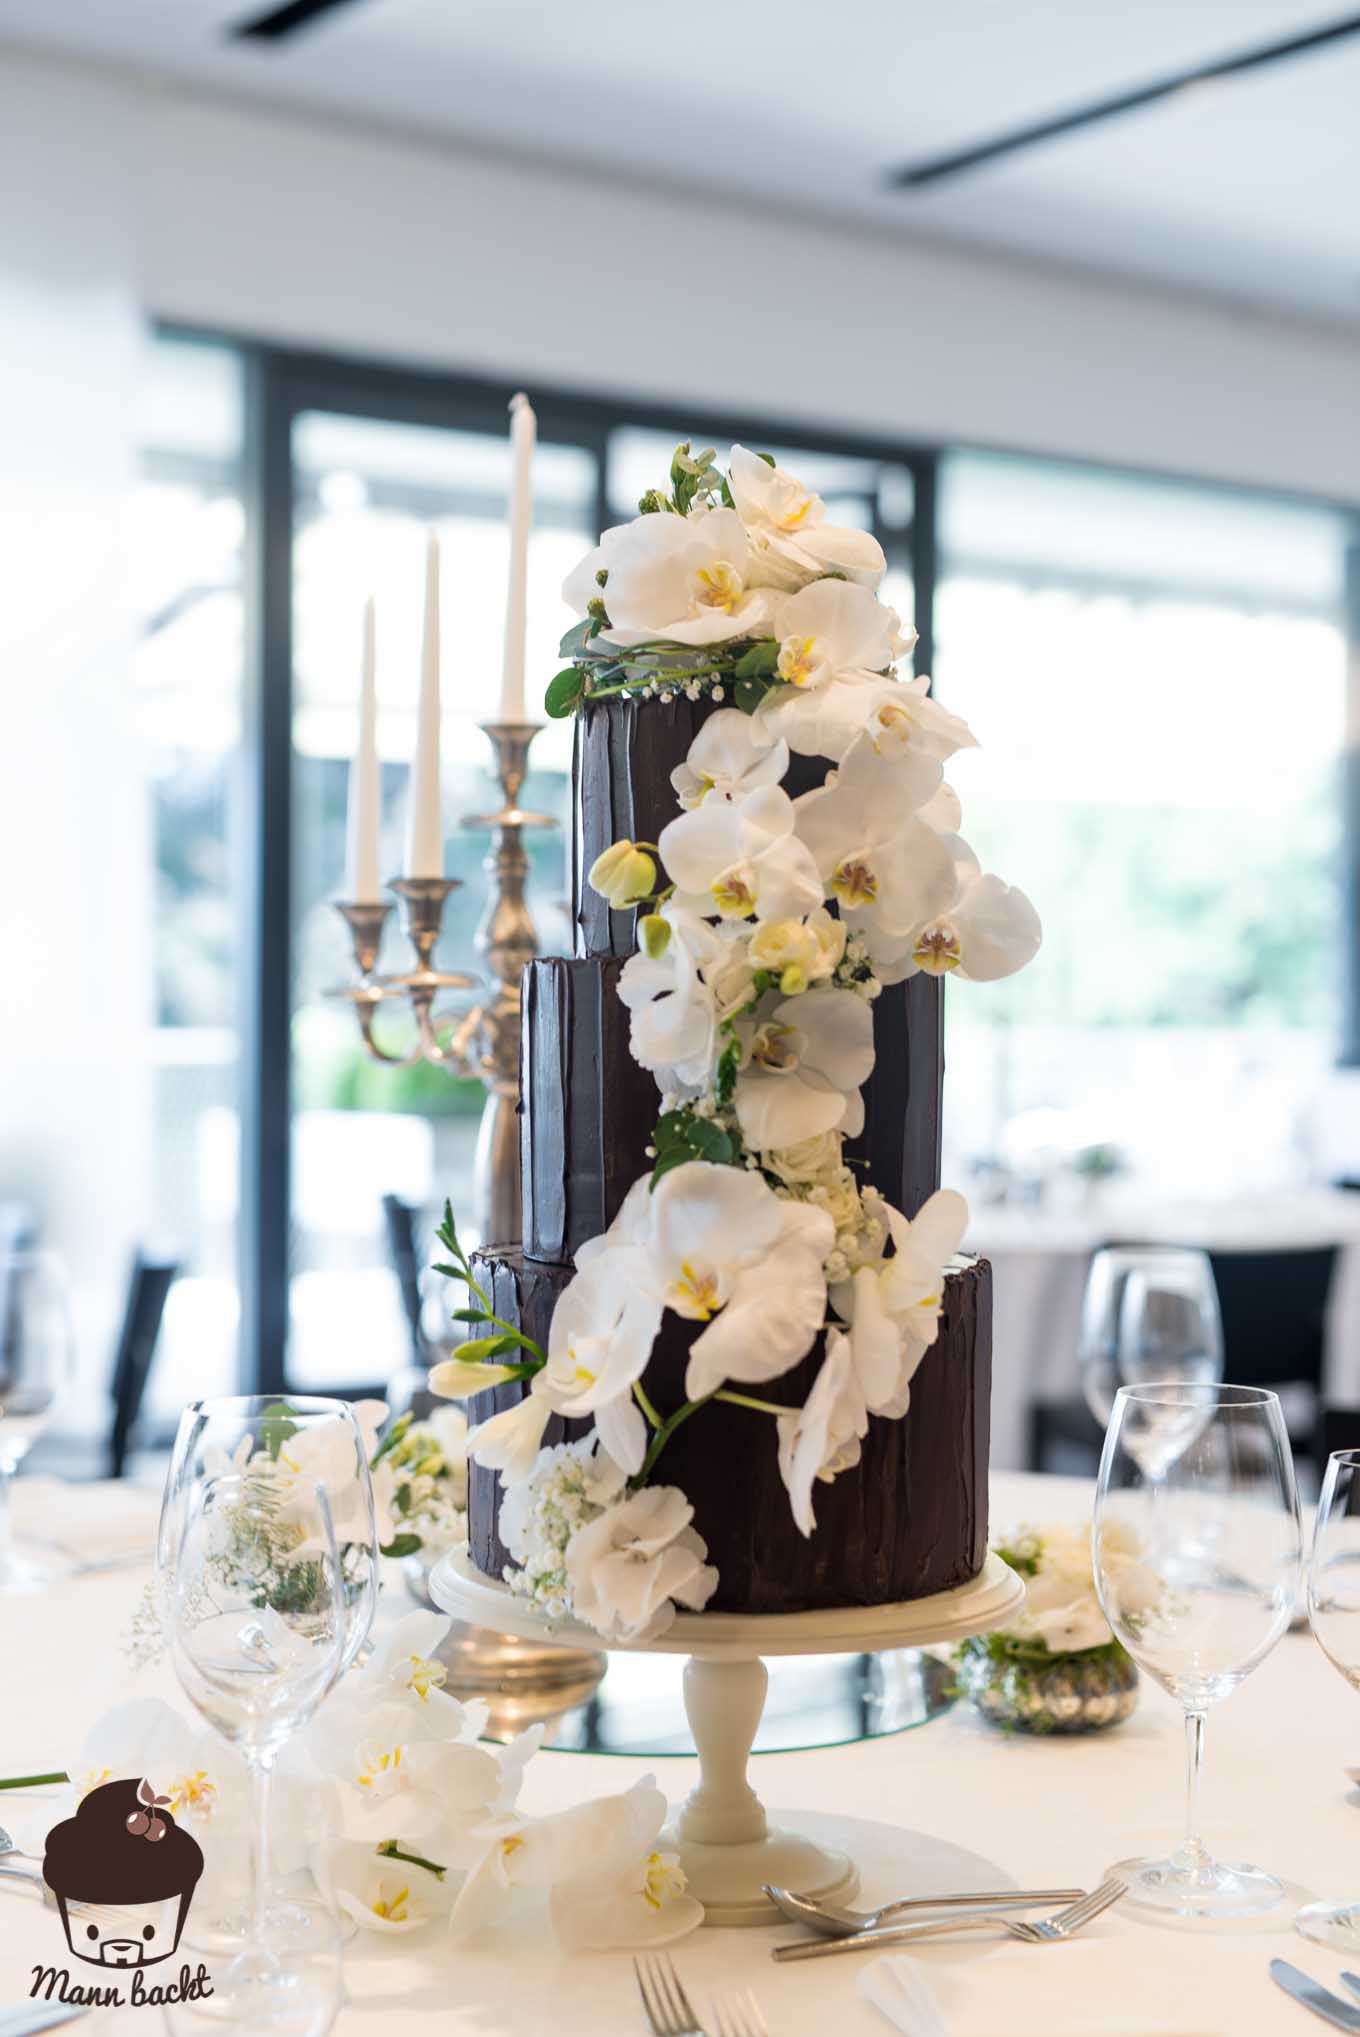 Mann backt Hochzeitstorte mit Orchideen Wedding Cake Orchids (3 von 7)